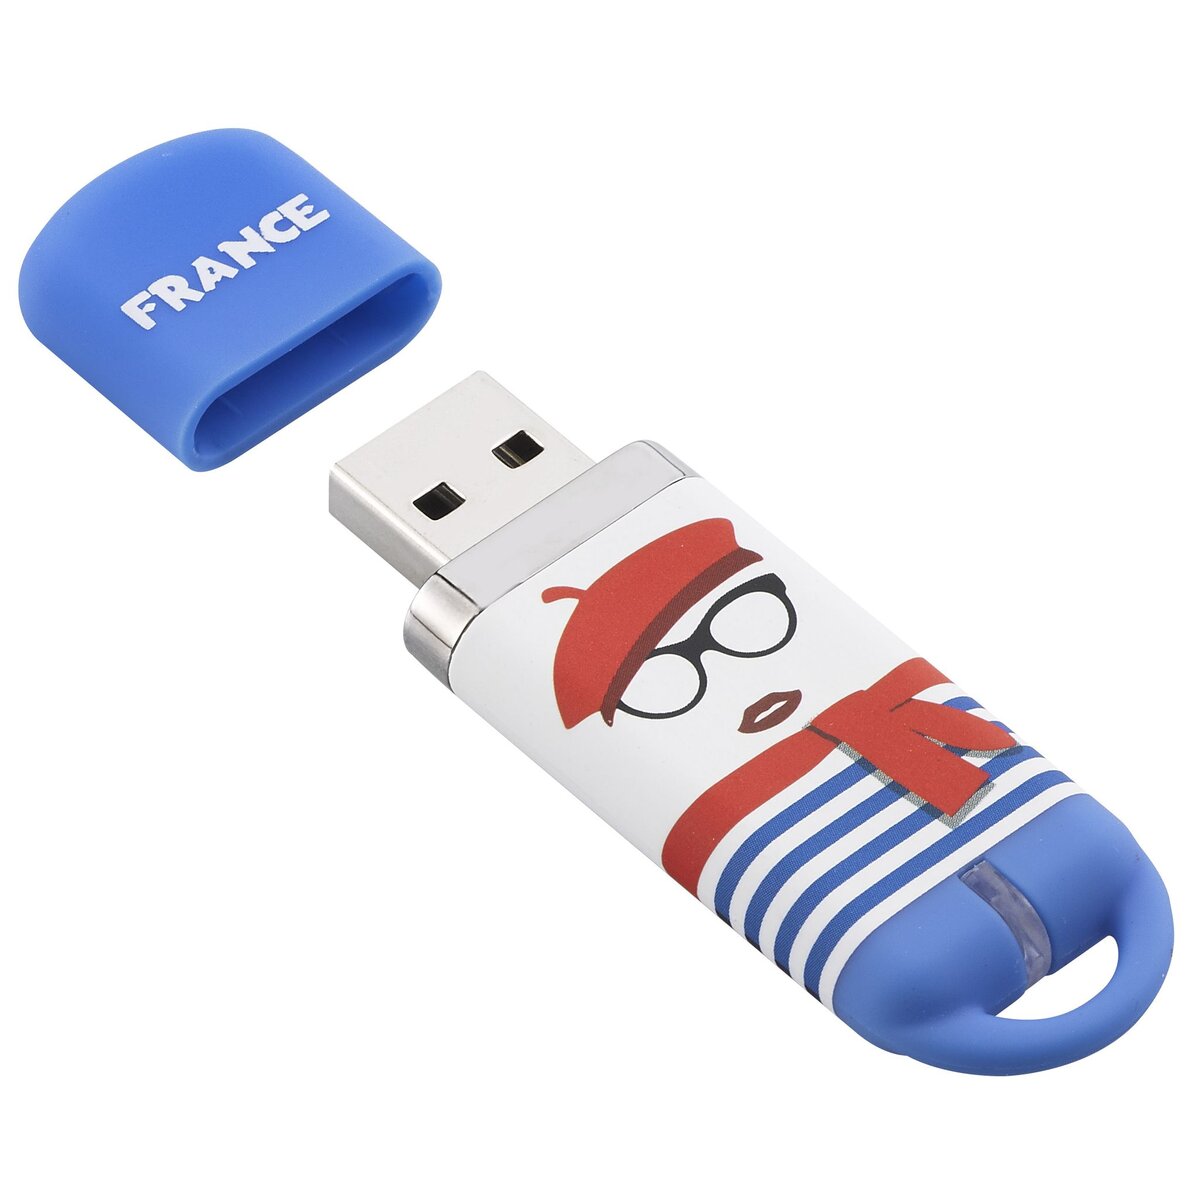 KEY OUEST Clé USB FRANCE PERSONNAGE - USB 2.0 - 16 Go